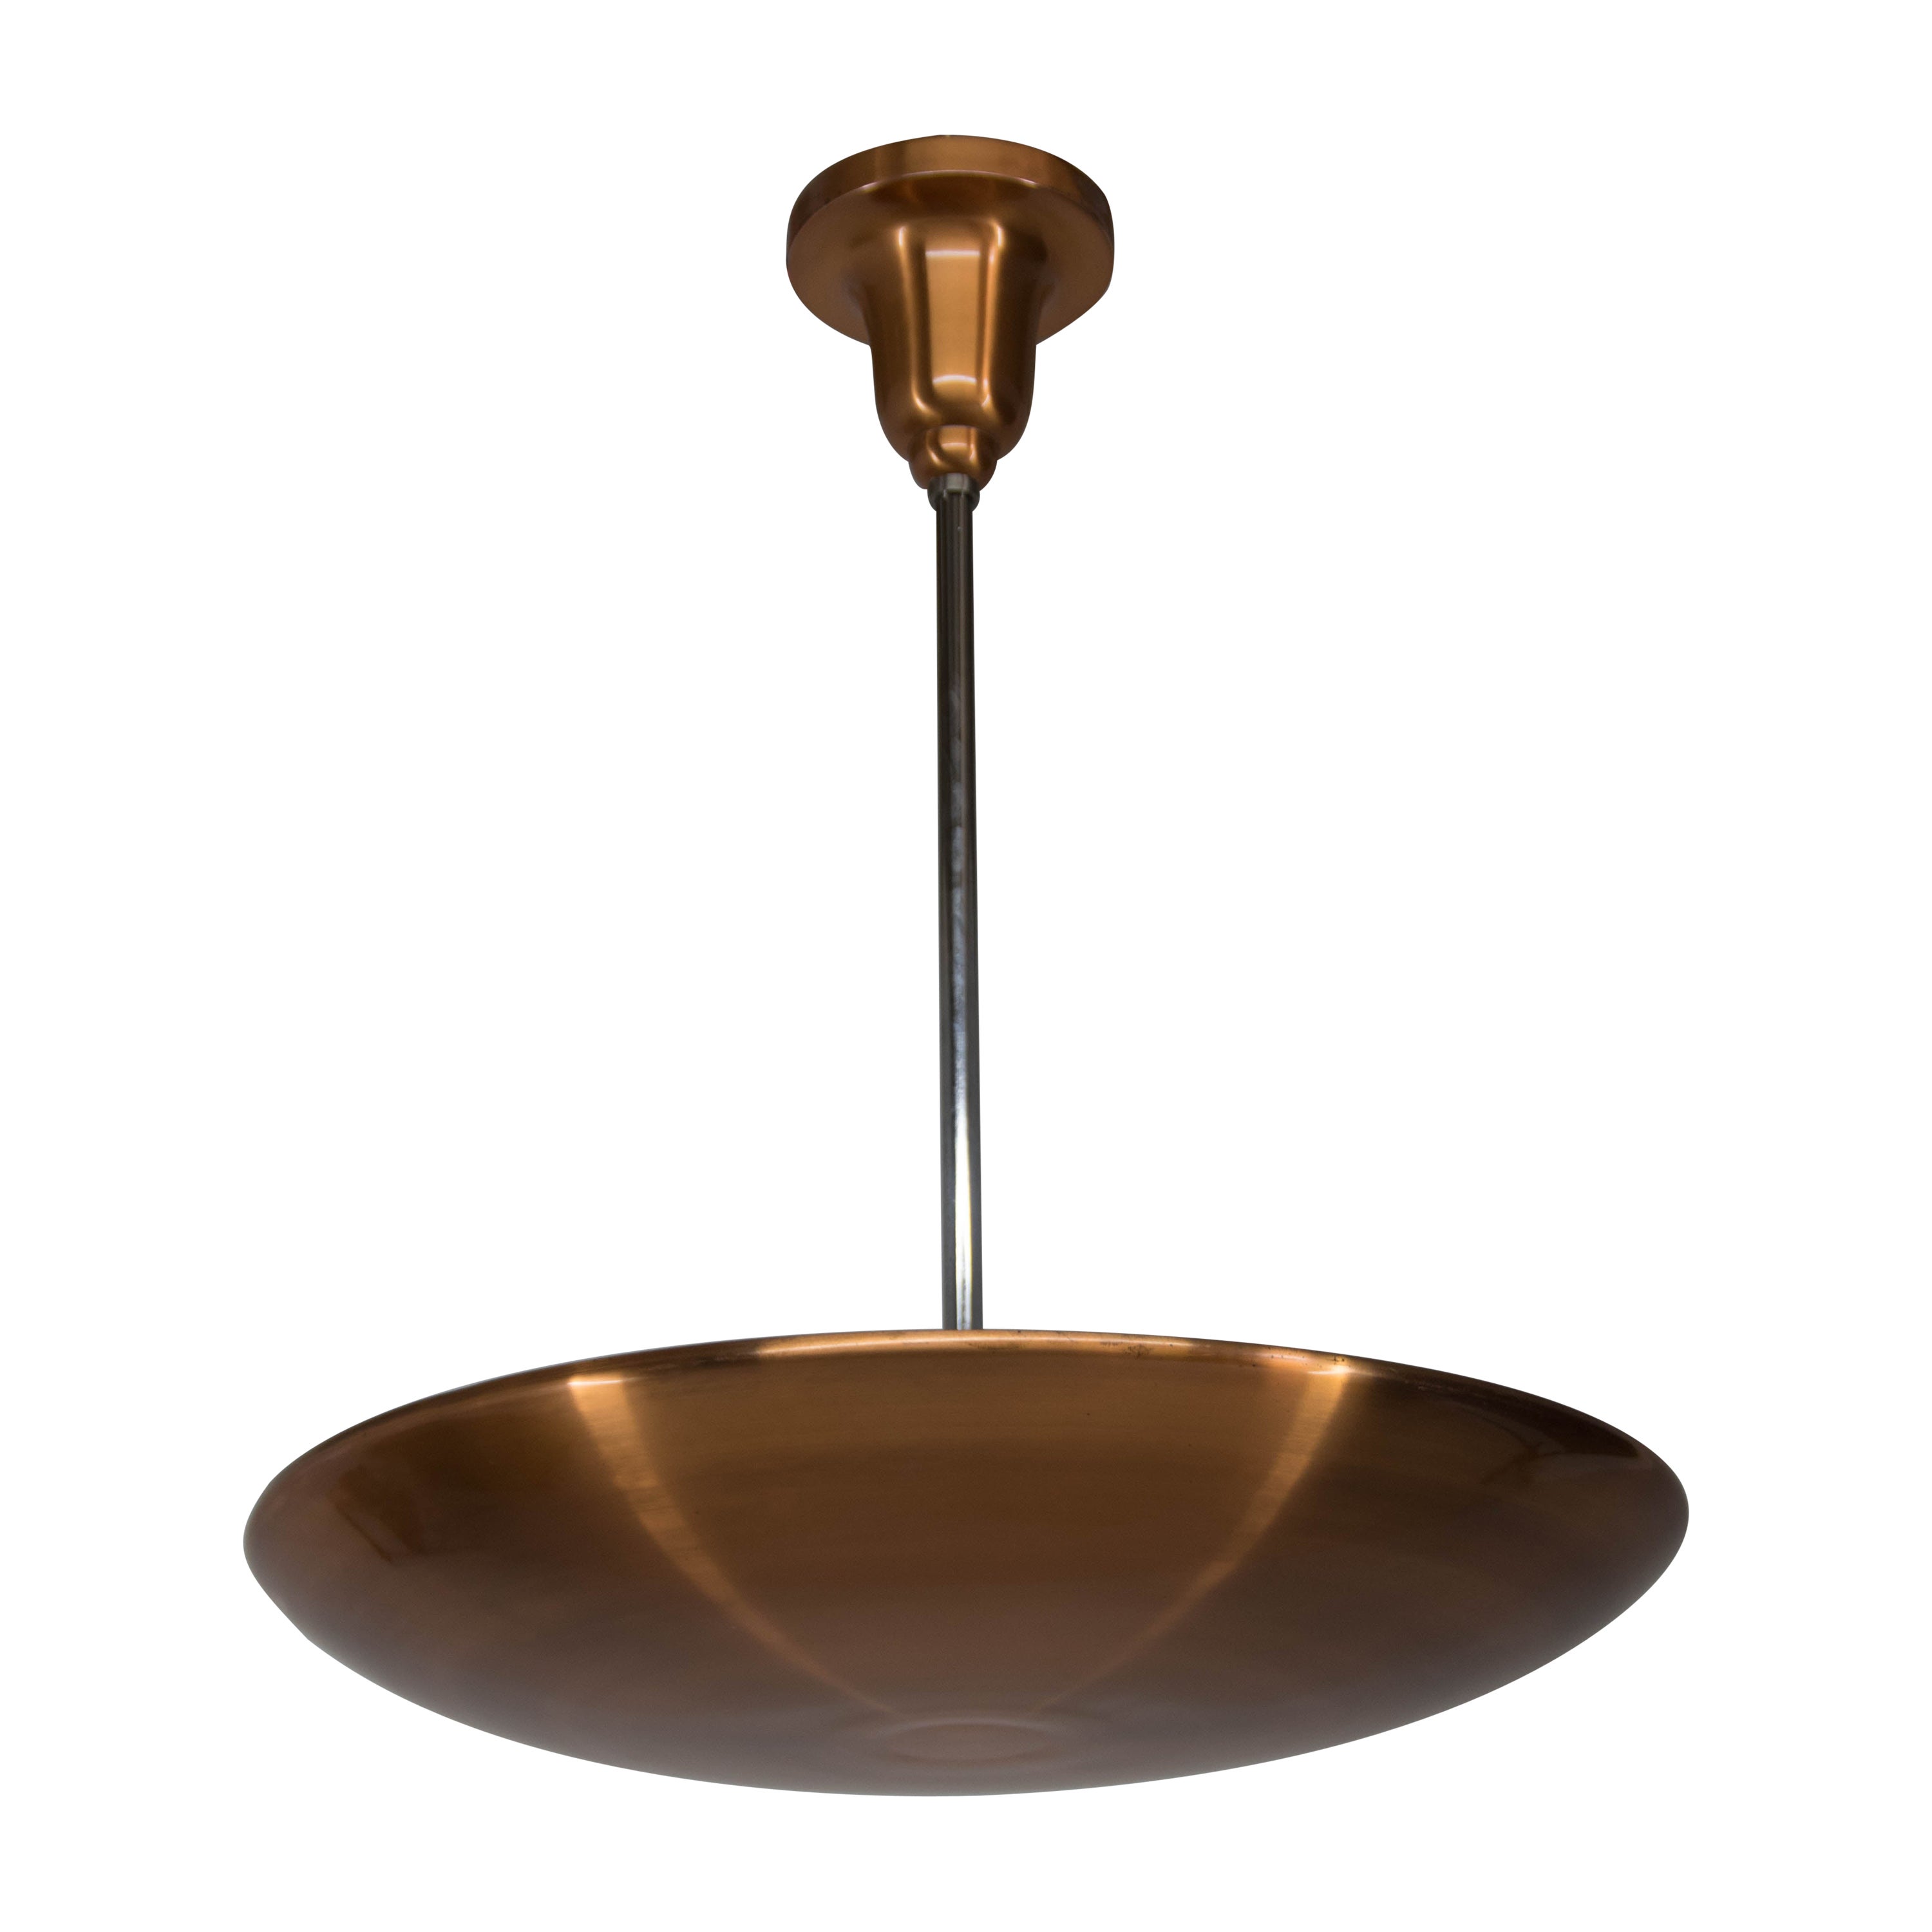 Bauhaus / Functionalist Copper Pendant by IAS, 1930s